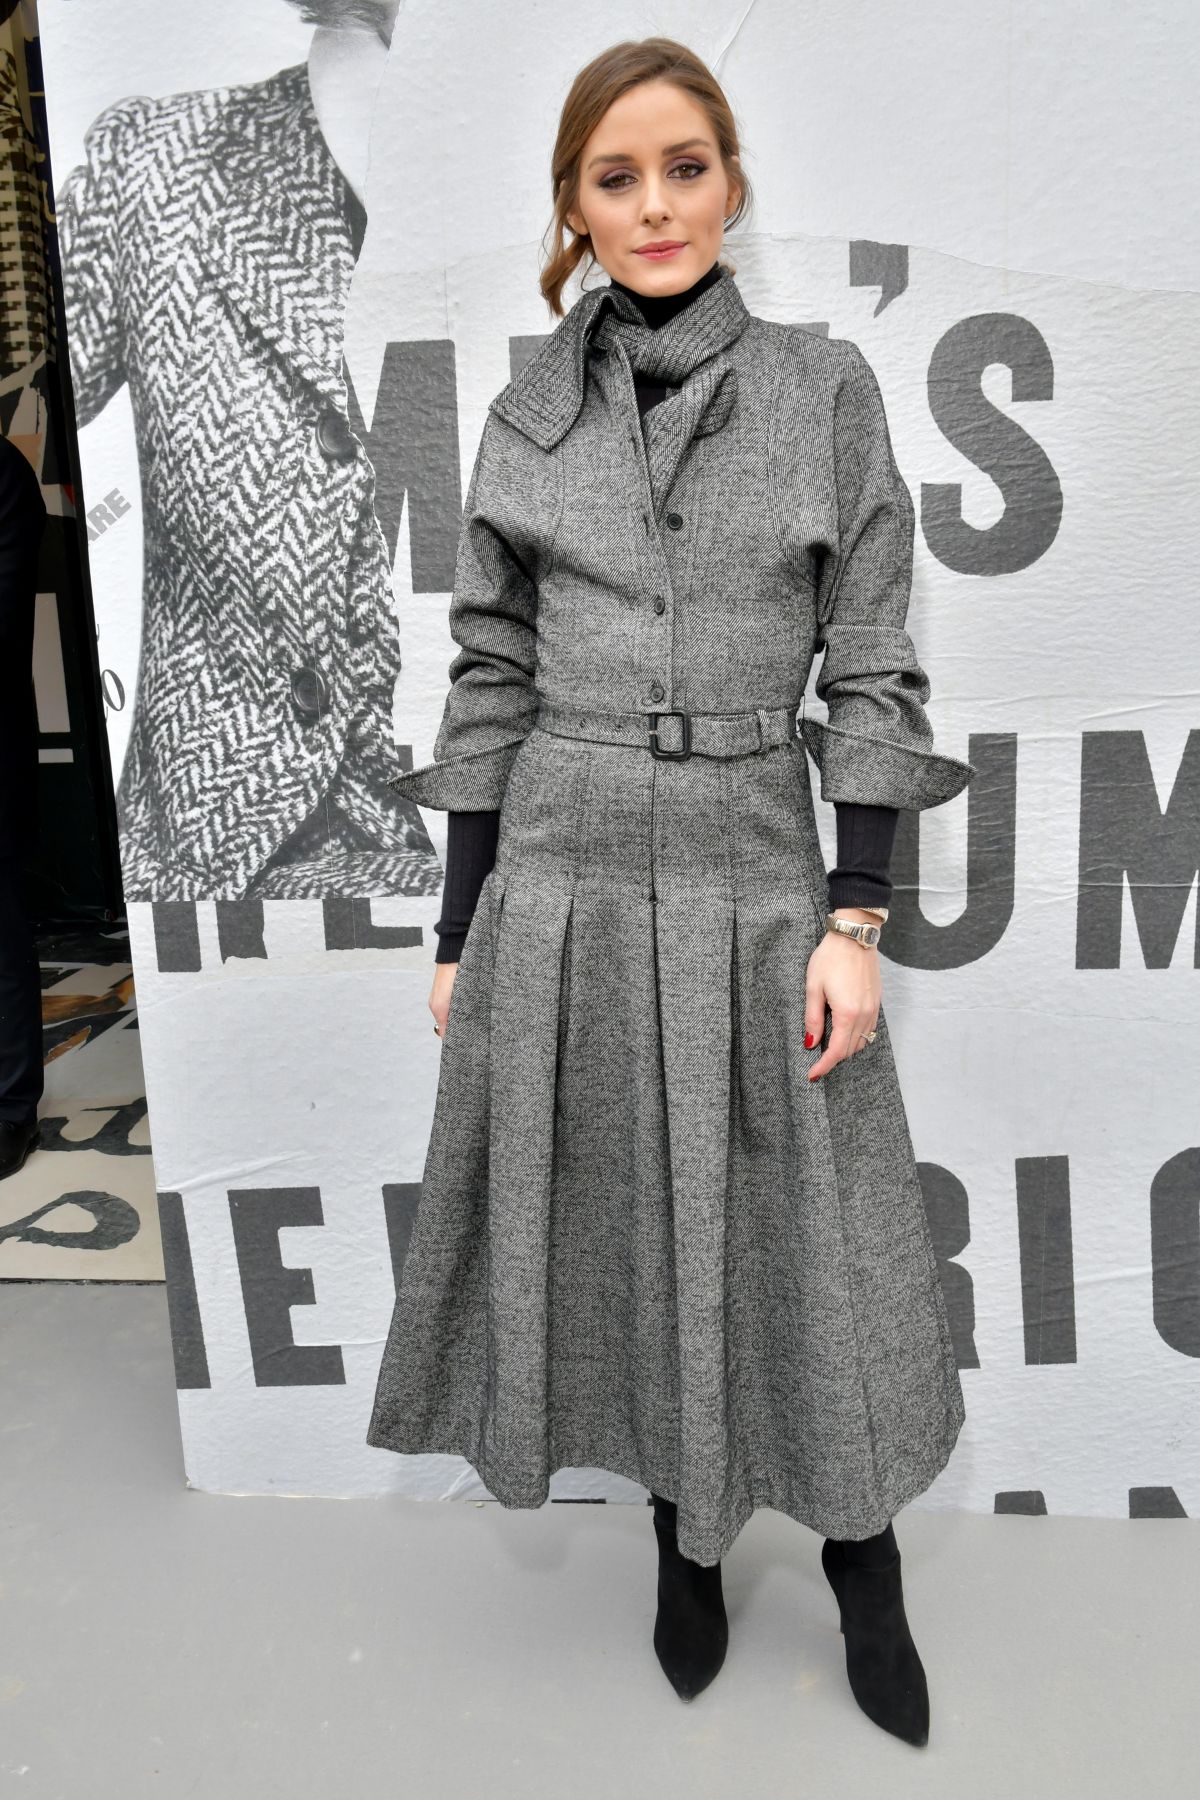 Olivia Palermo At Christian Dior Show At Paris Fashion Week 02 27 2018